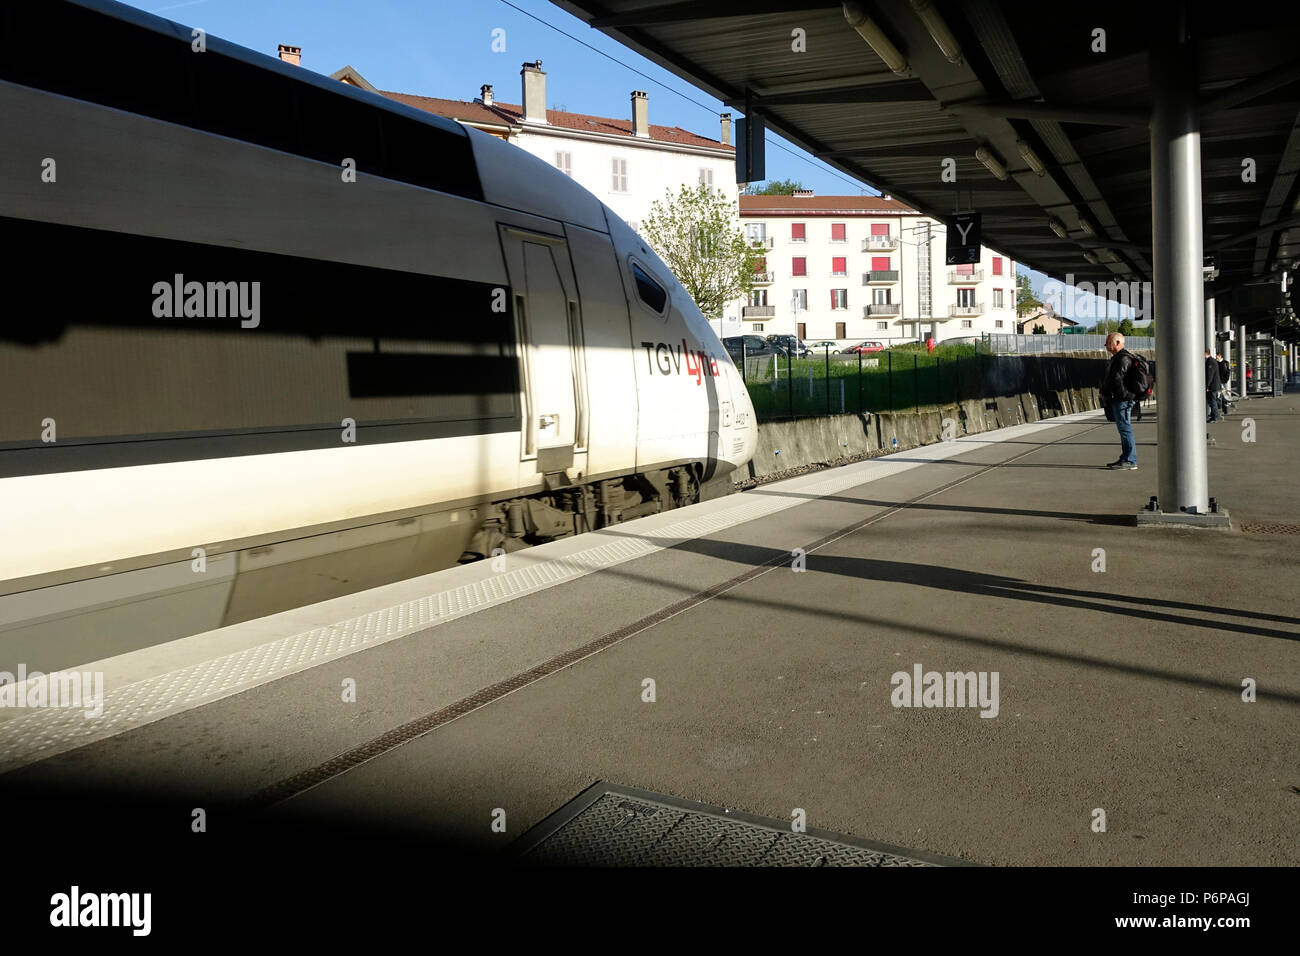 Le TGV (Train Grande Vitesse) exploité par la SNCF. La gare de Bellegarde. La France. Banque D'Images